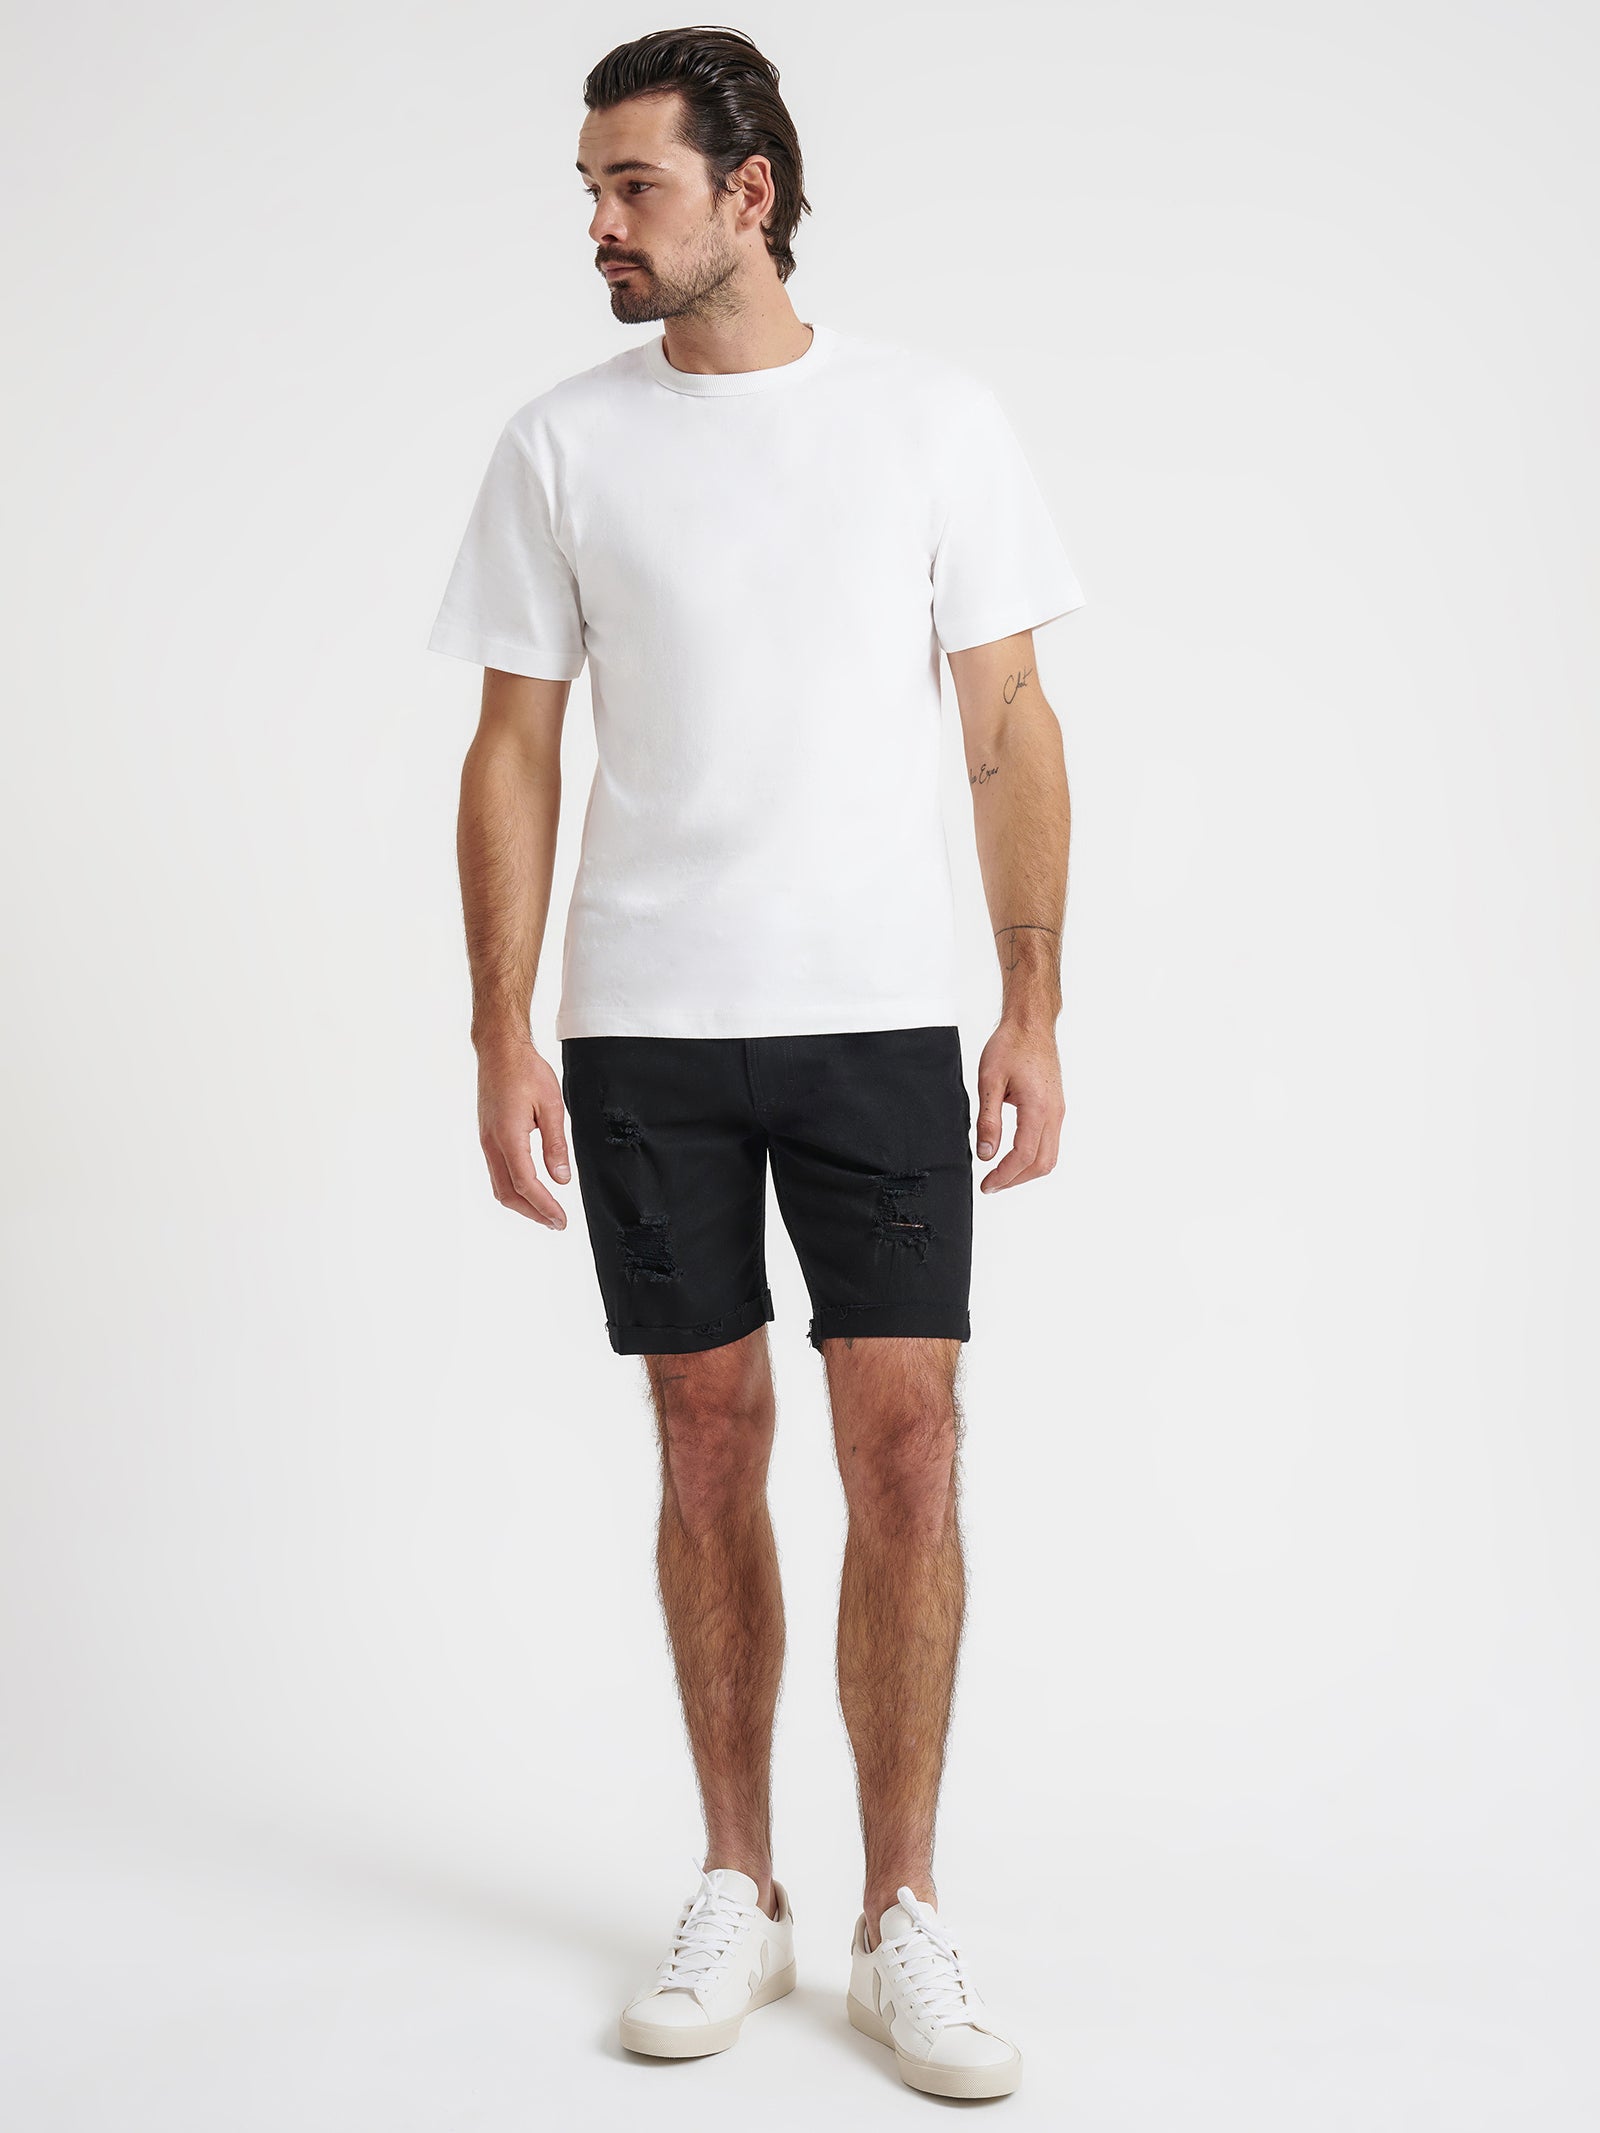 Zane Skinny Denim Shorts in True Black Rip